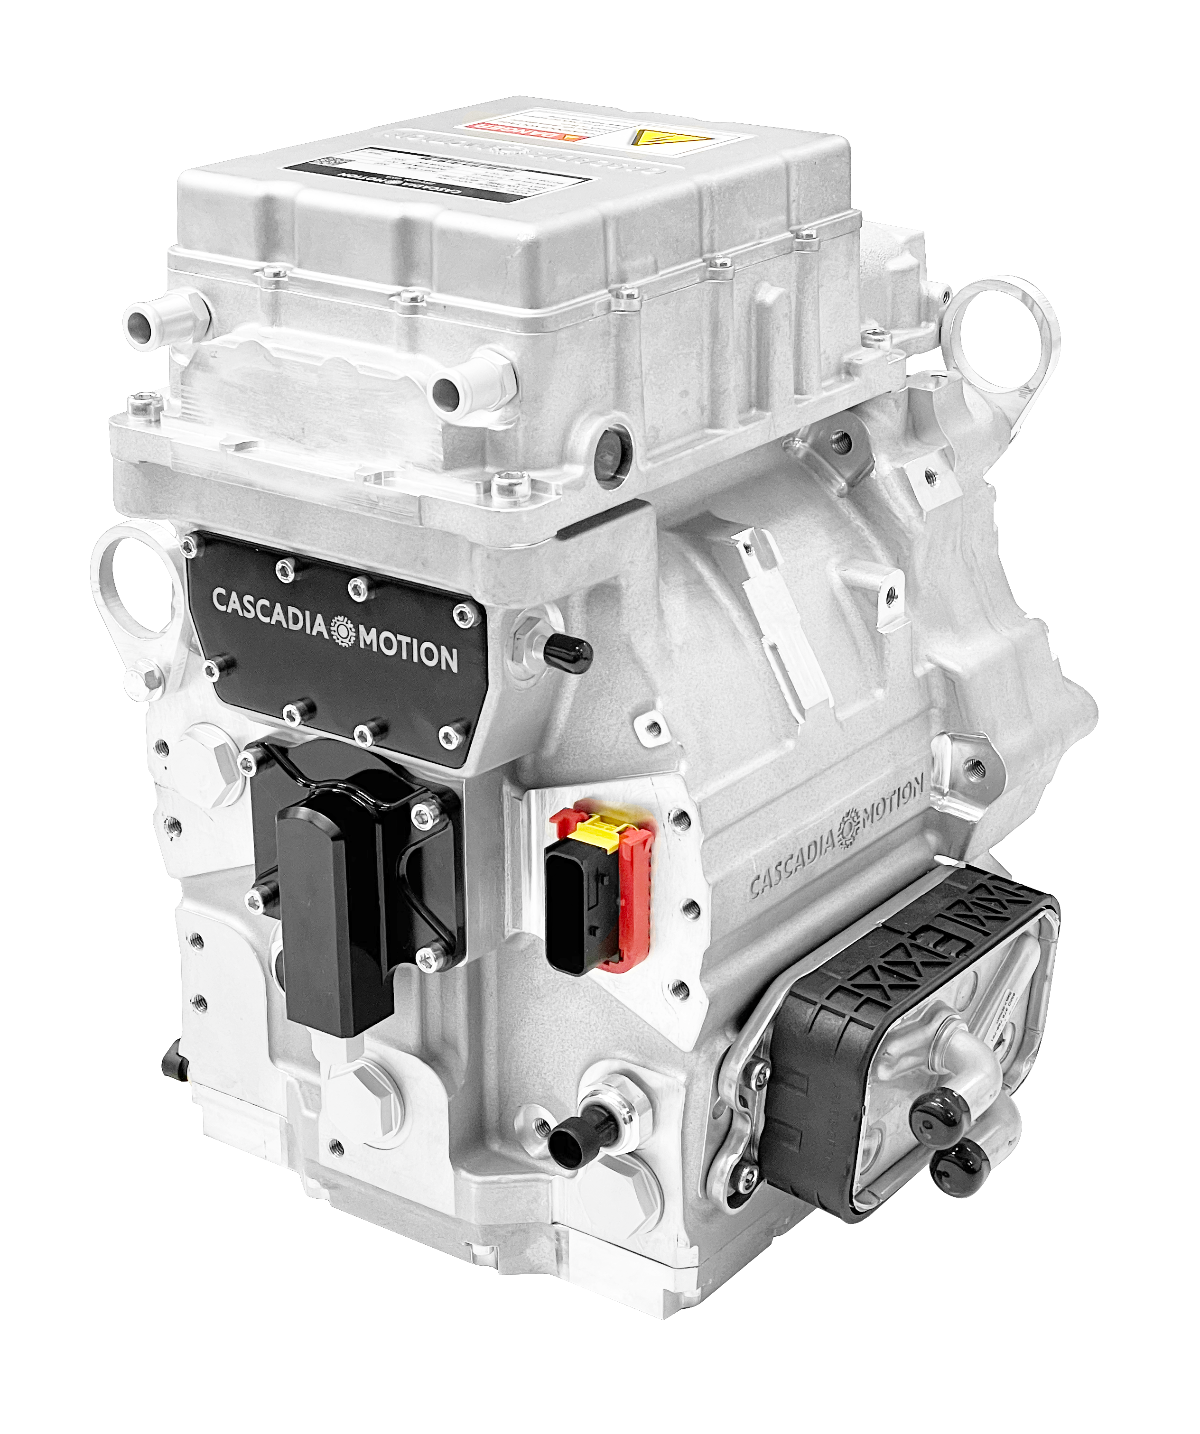 HVH250 motor + L100 inverter